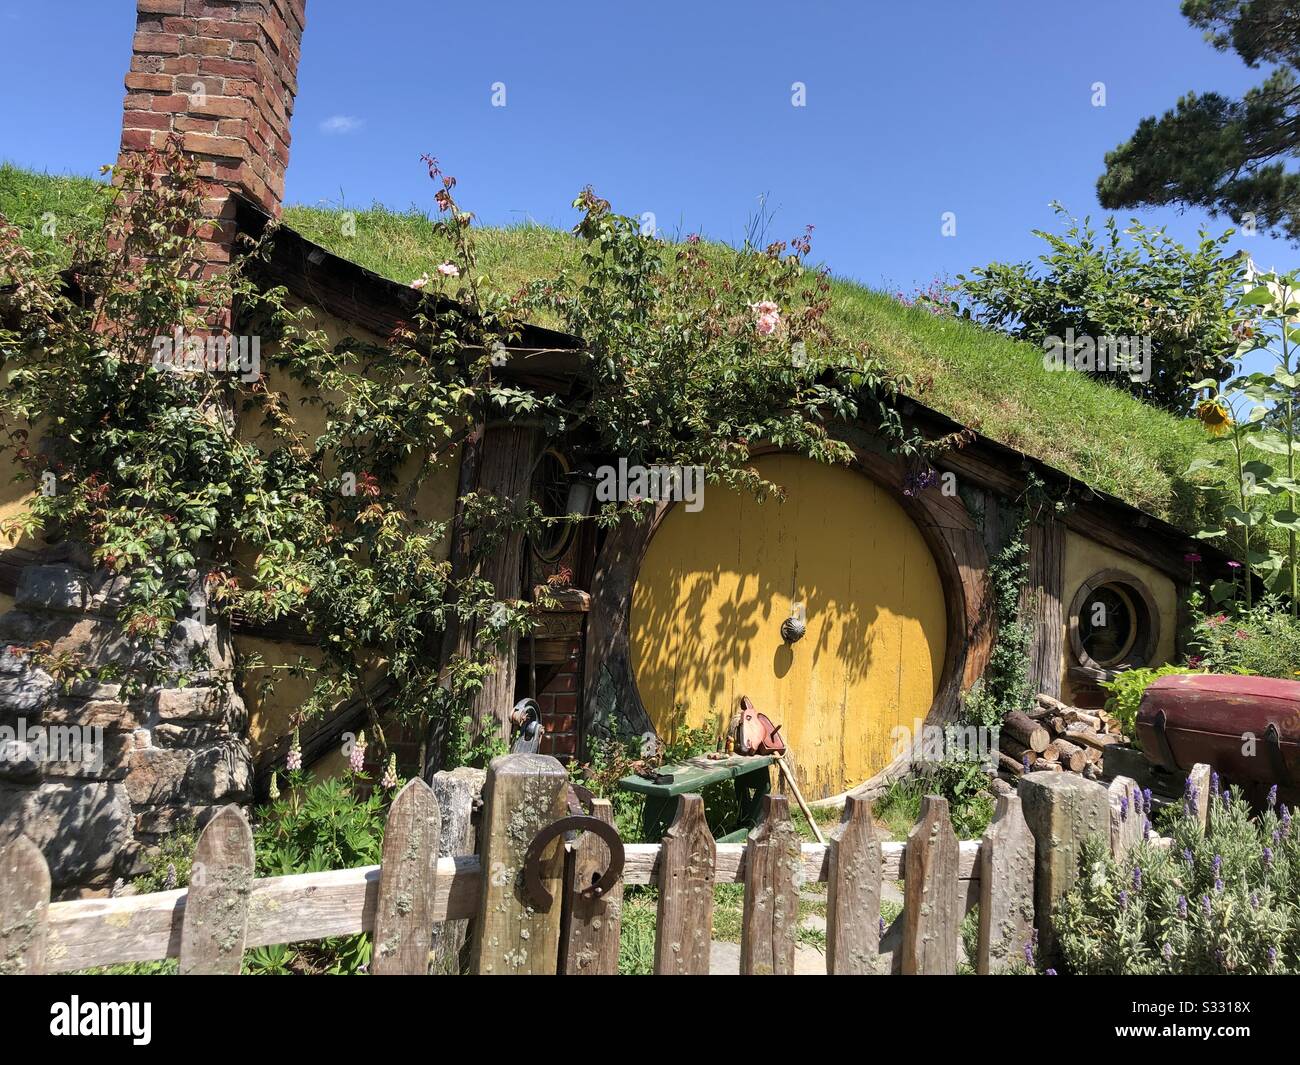 Photo de l'ensemble de films de l'hobbit. Porte ronde jaune et petite maison avec verdure. Banque D'Images